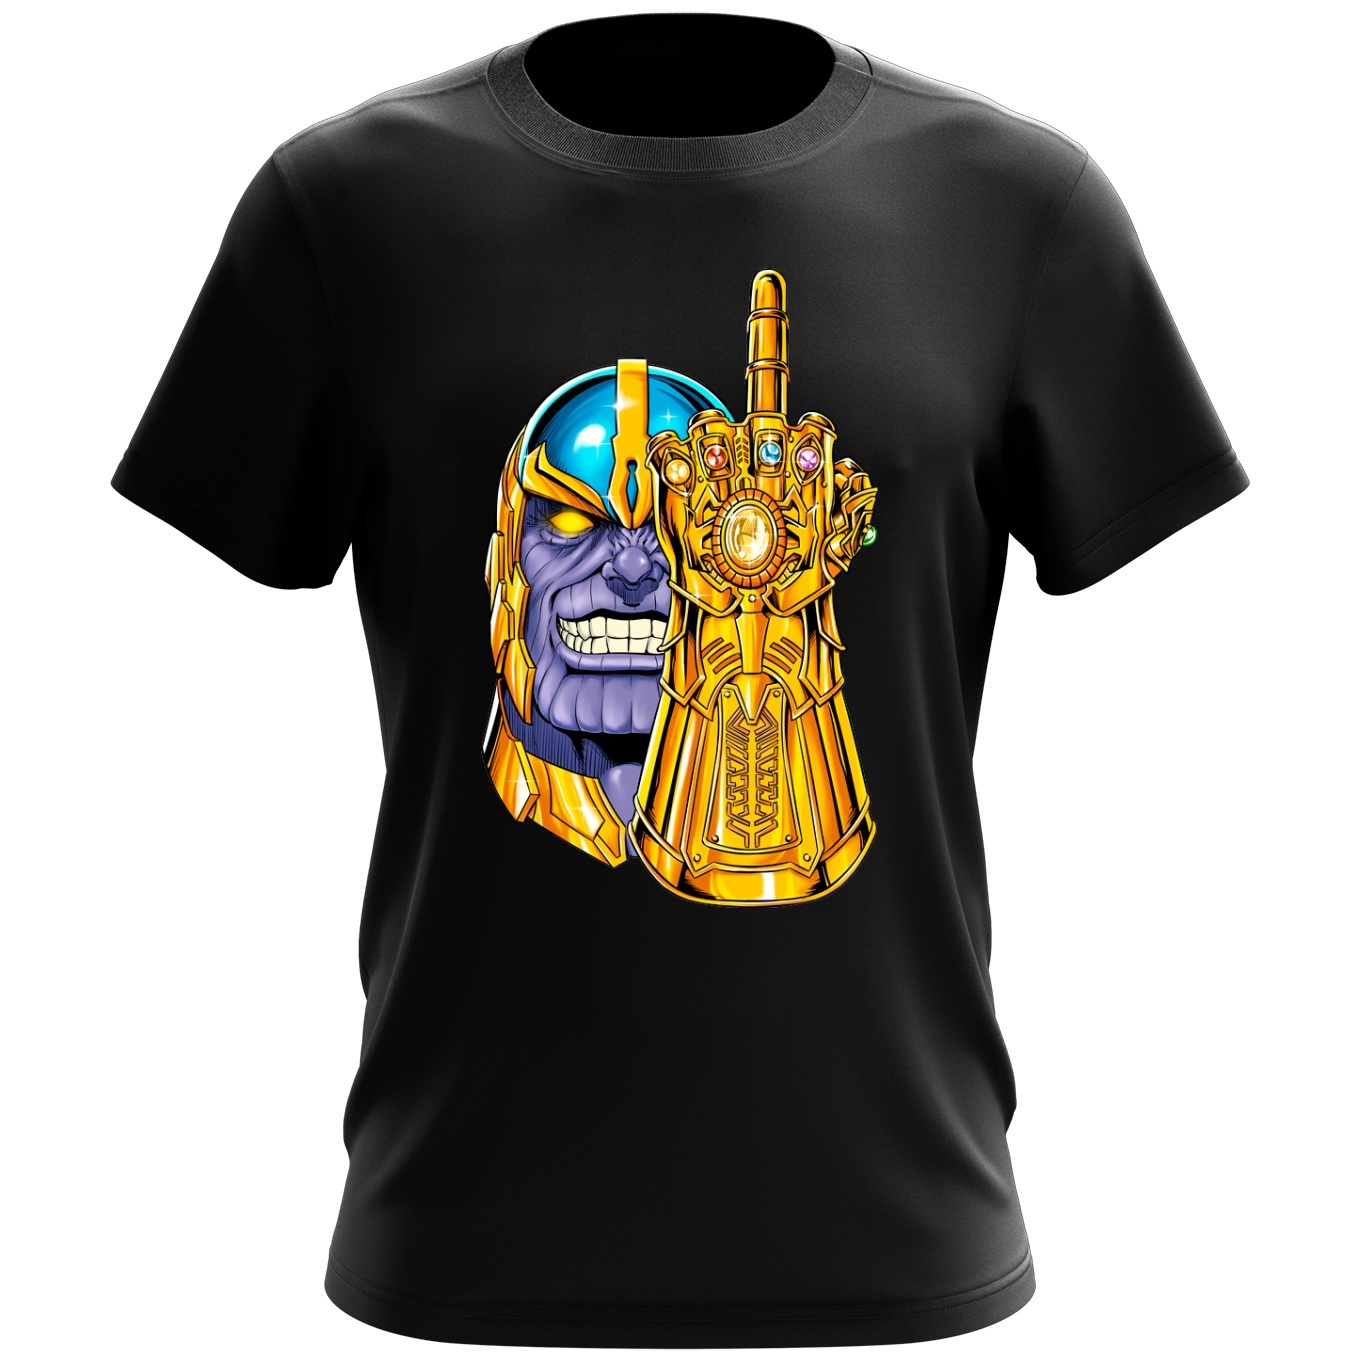 Thanos Parody Men's T-shirt - Thanos (Funny Thanos Parody - High Quality  T-shirt - Size 1078 - Ref : 1078)